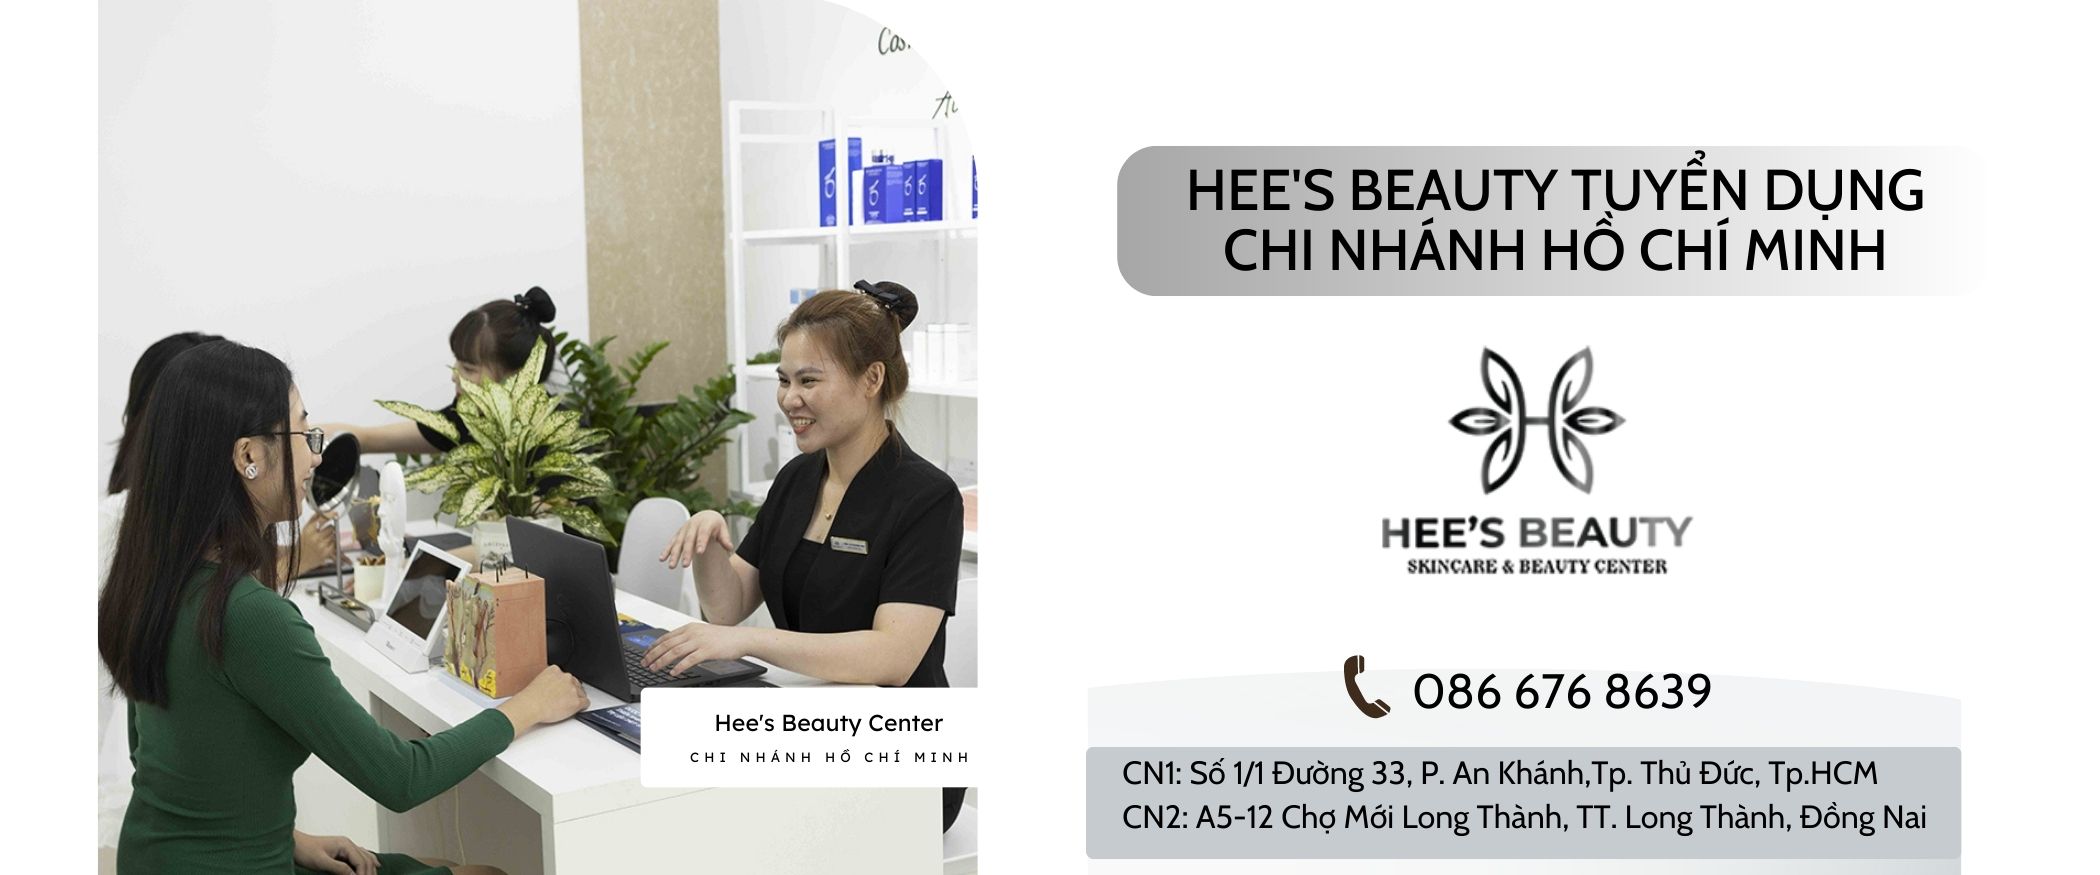 Hee's Beauty Tuyển Dụng Tập Trung Chi Nhánh Hồ Chí Minh